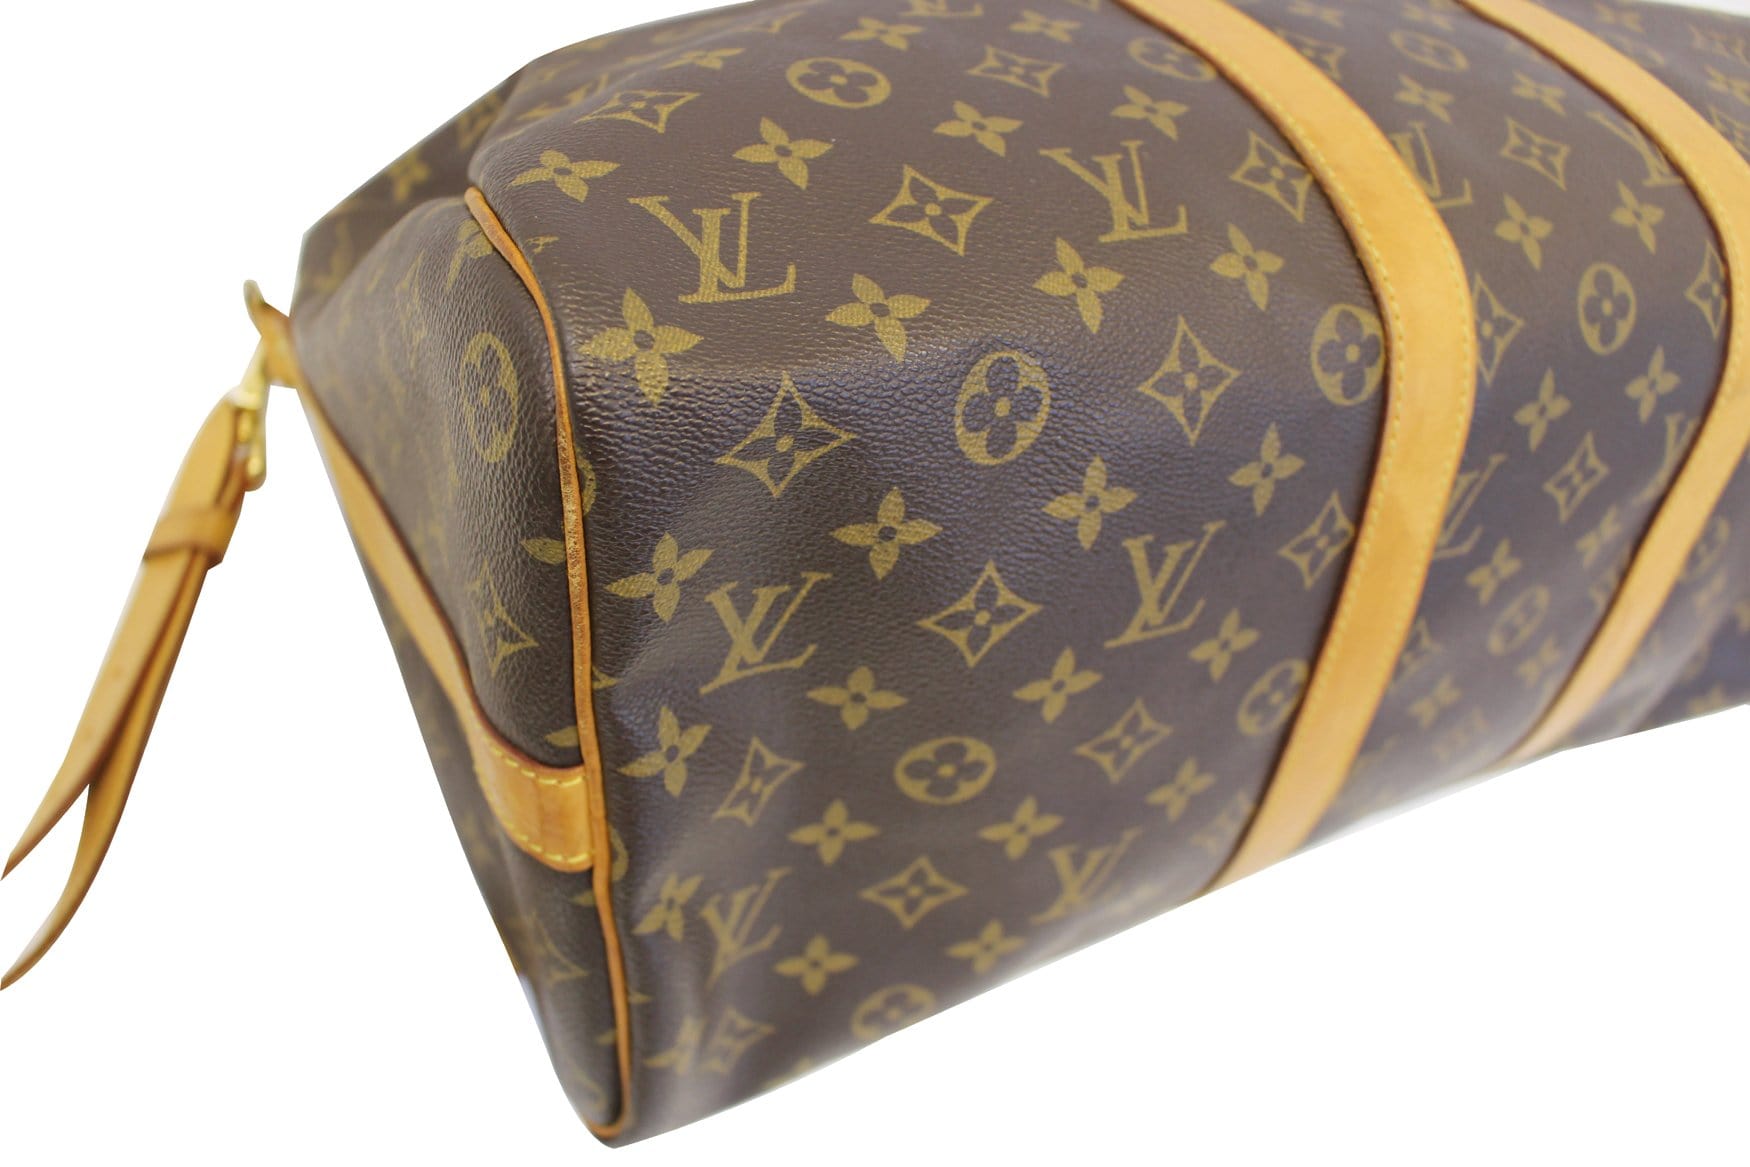 Louis Vuitton - Keepall Bandoulière 45 - Grey - Monogram Canvas - Men - Travel Bag - Luxury